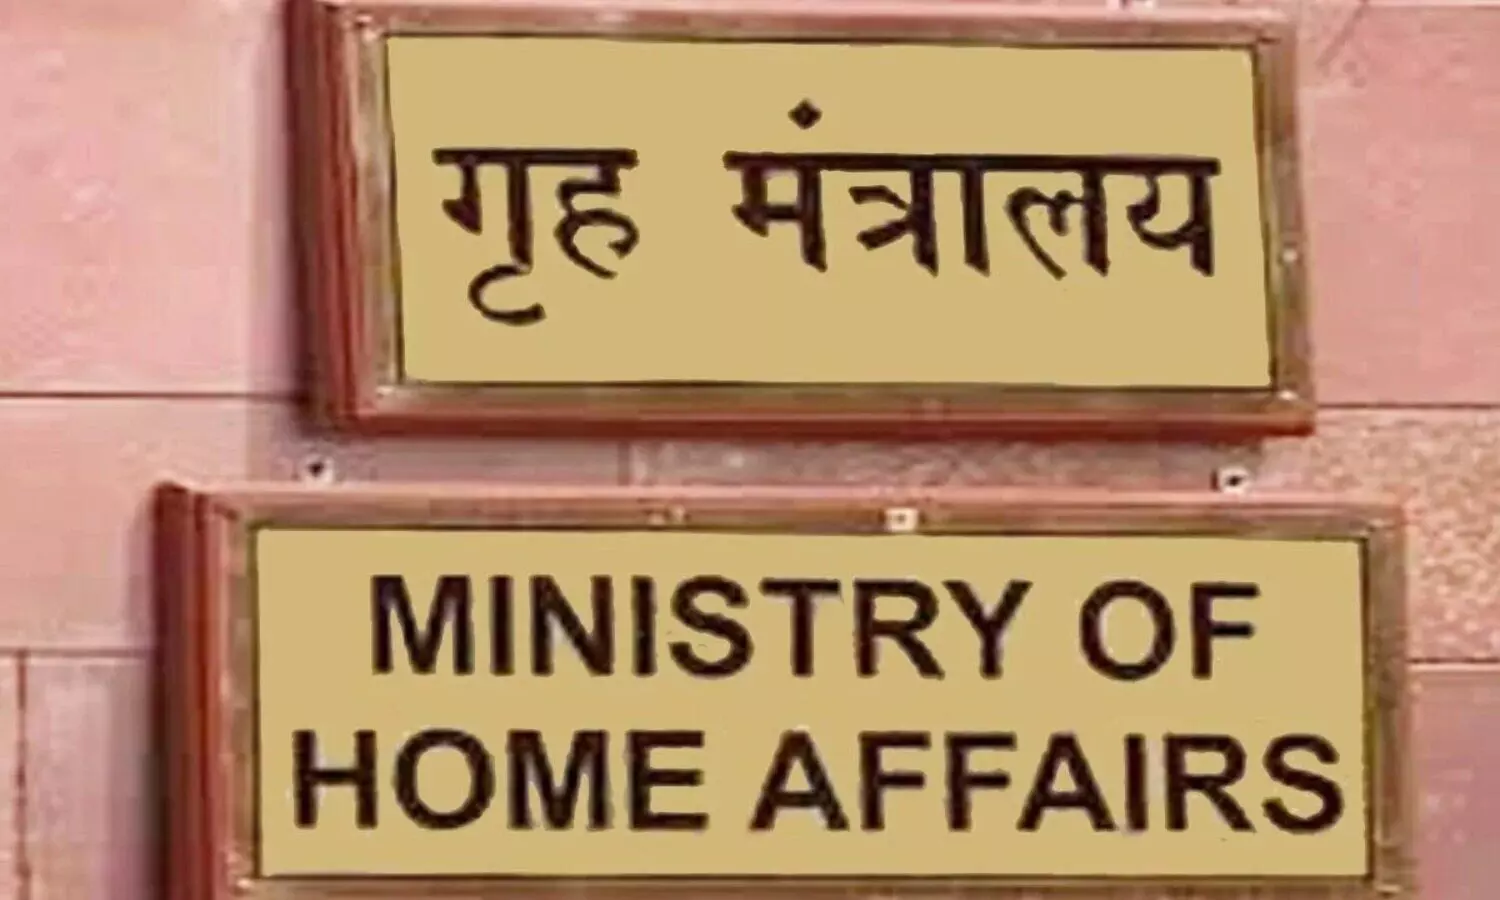 गृह मंत्रालय की साइट पर इंग्लिश में 39 तो हिंदी में 36 संगठन प्रतिबंधित, जानें क्यों